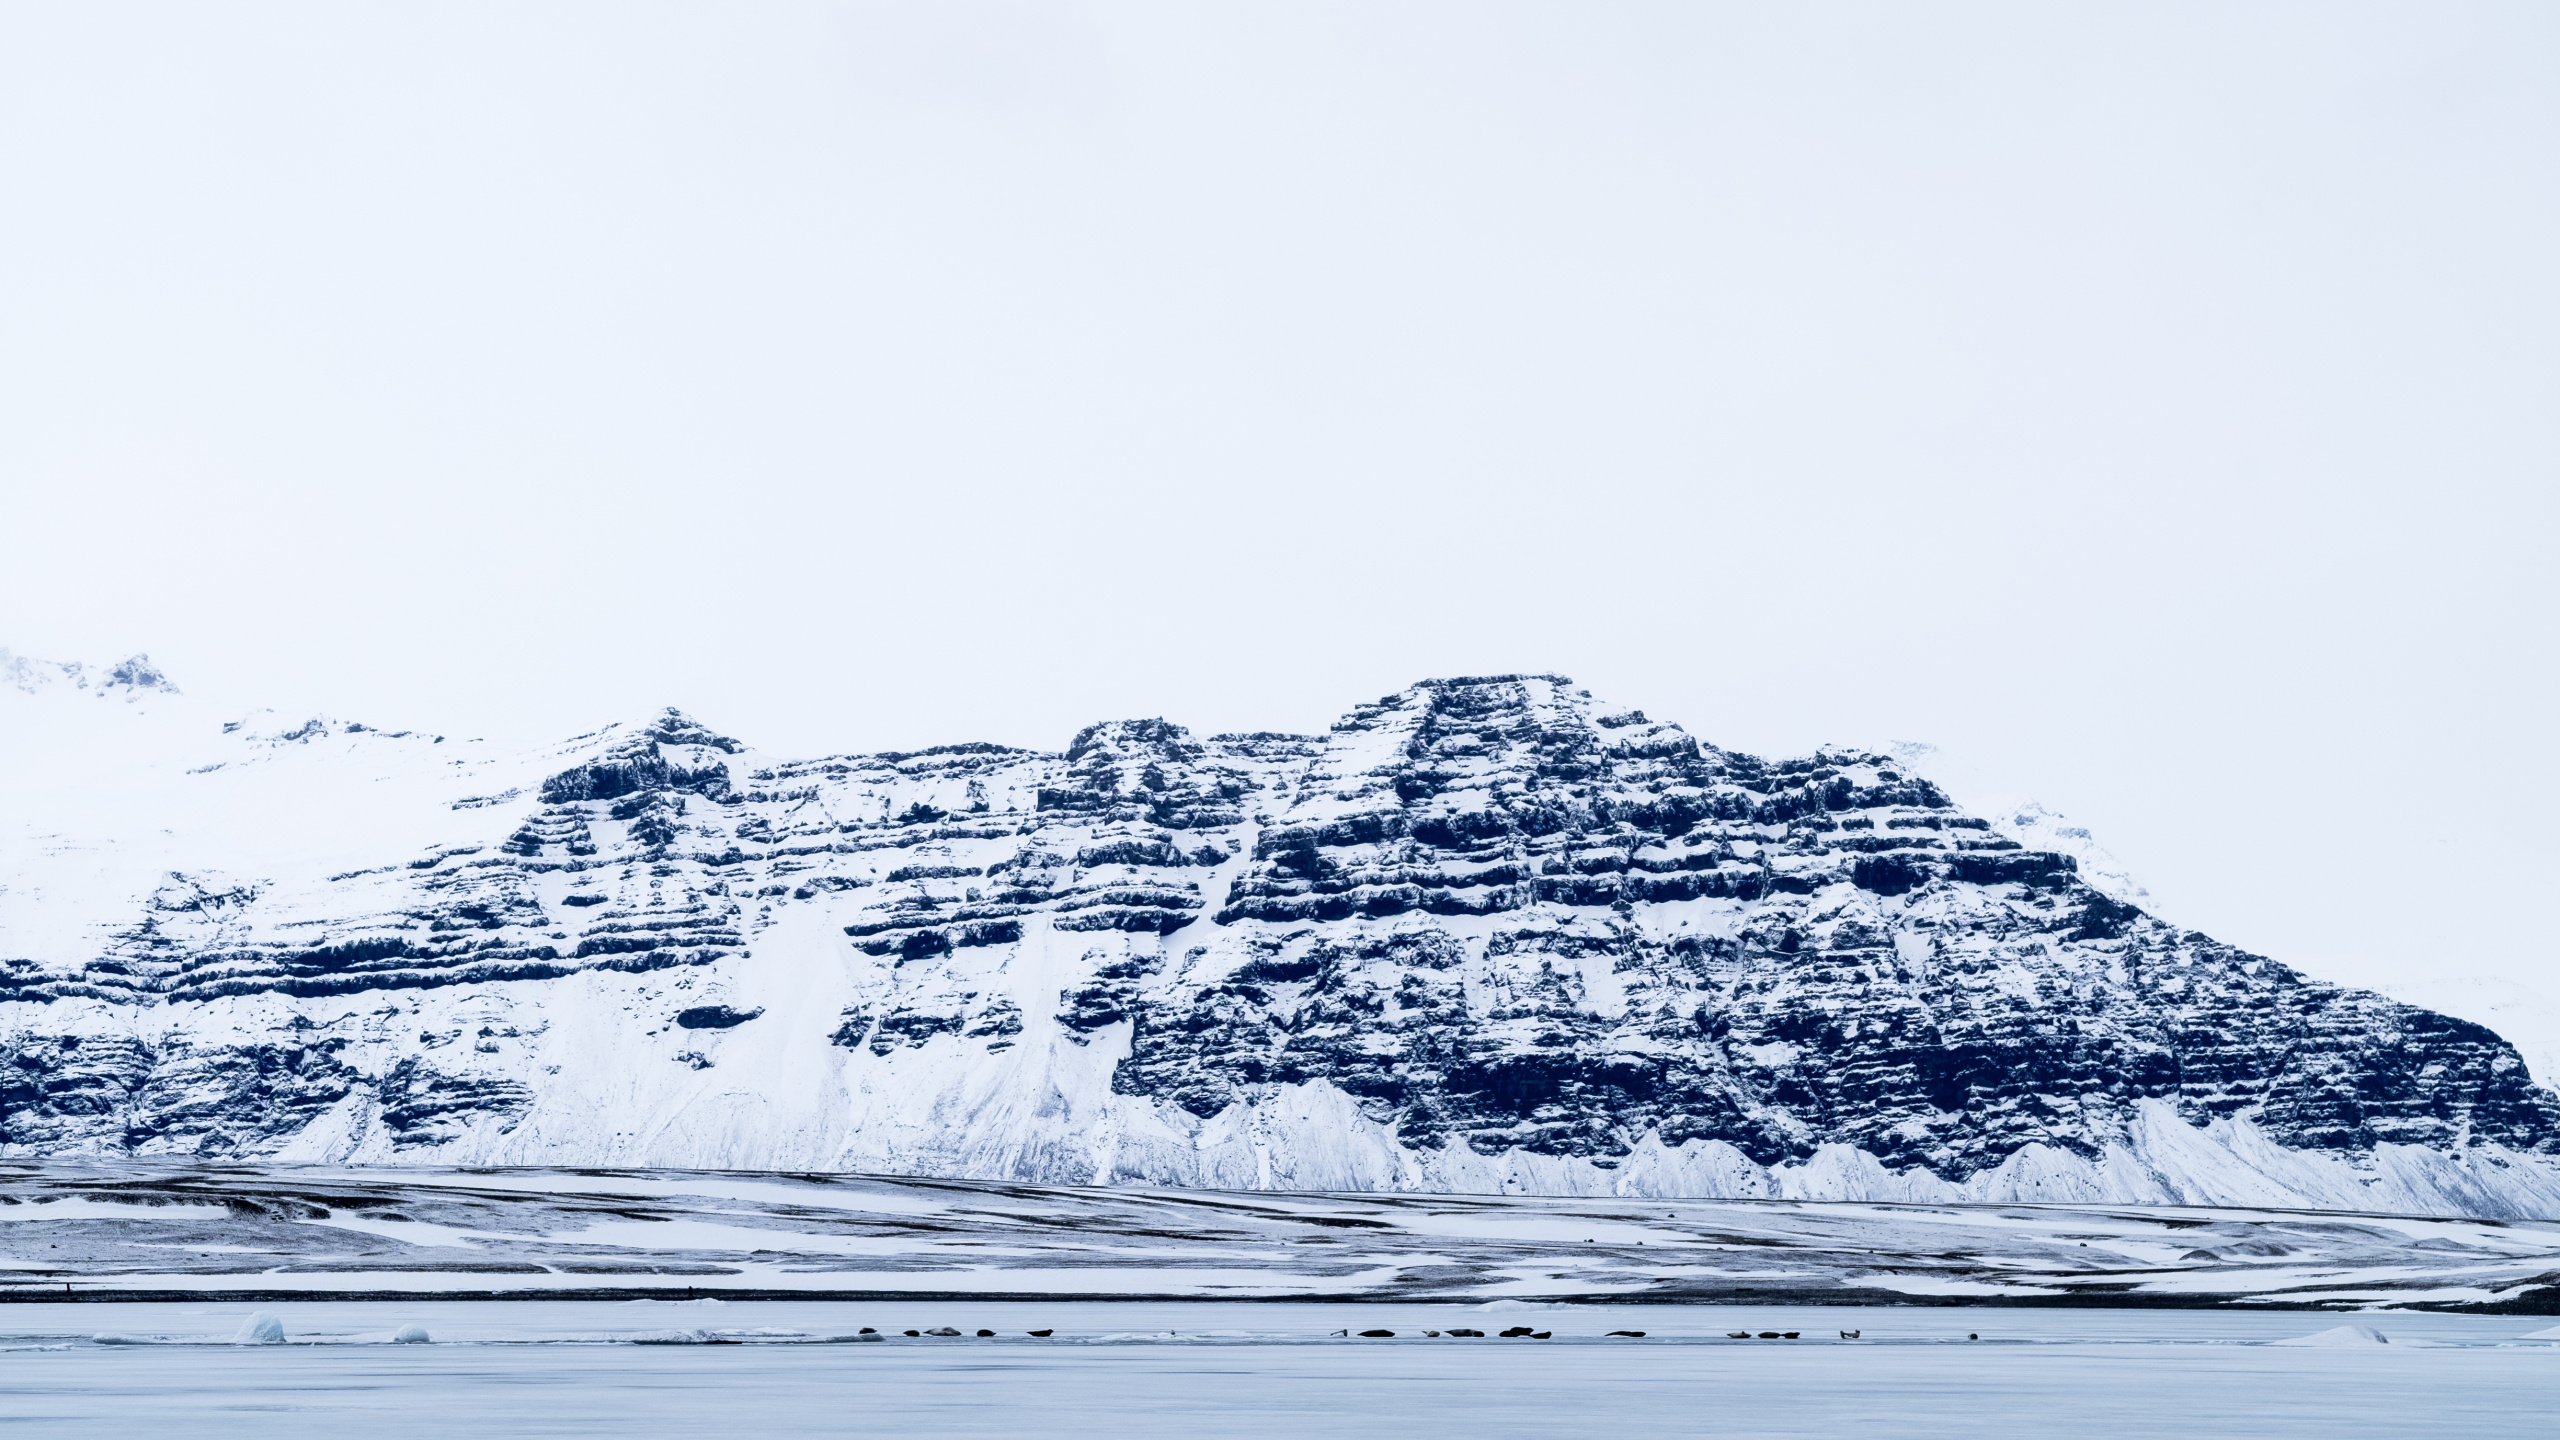 冰川, 冰山, 北极, 大海, 冰川地貌 壁纸 2560x1440 允许